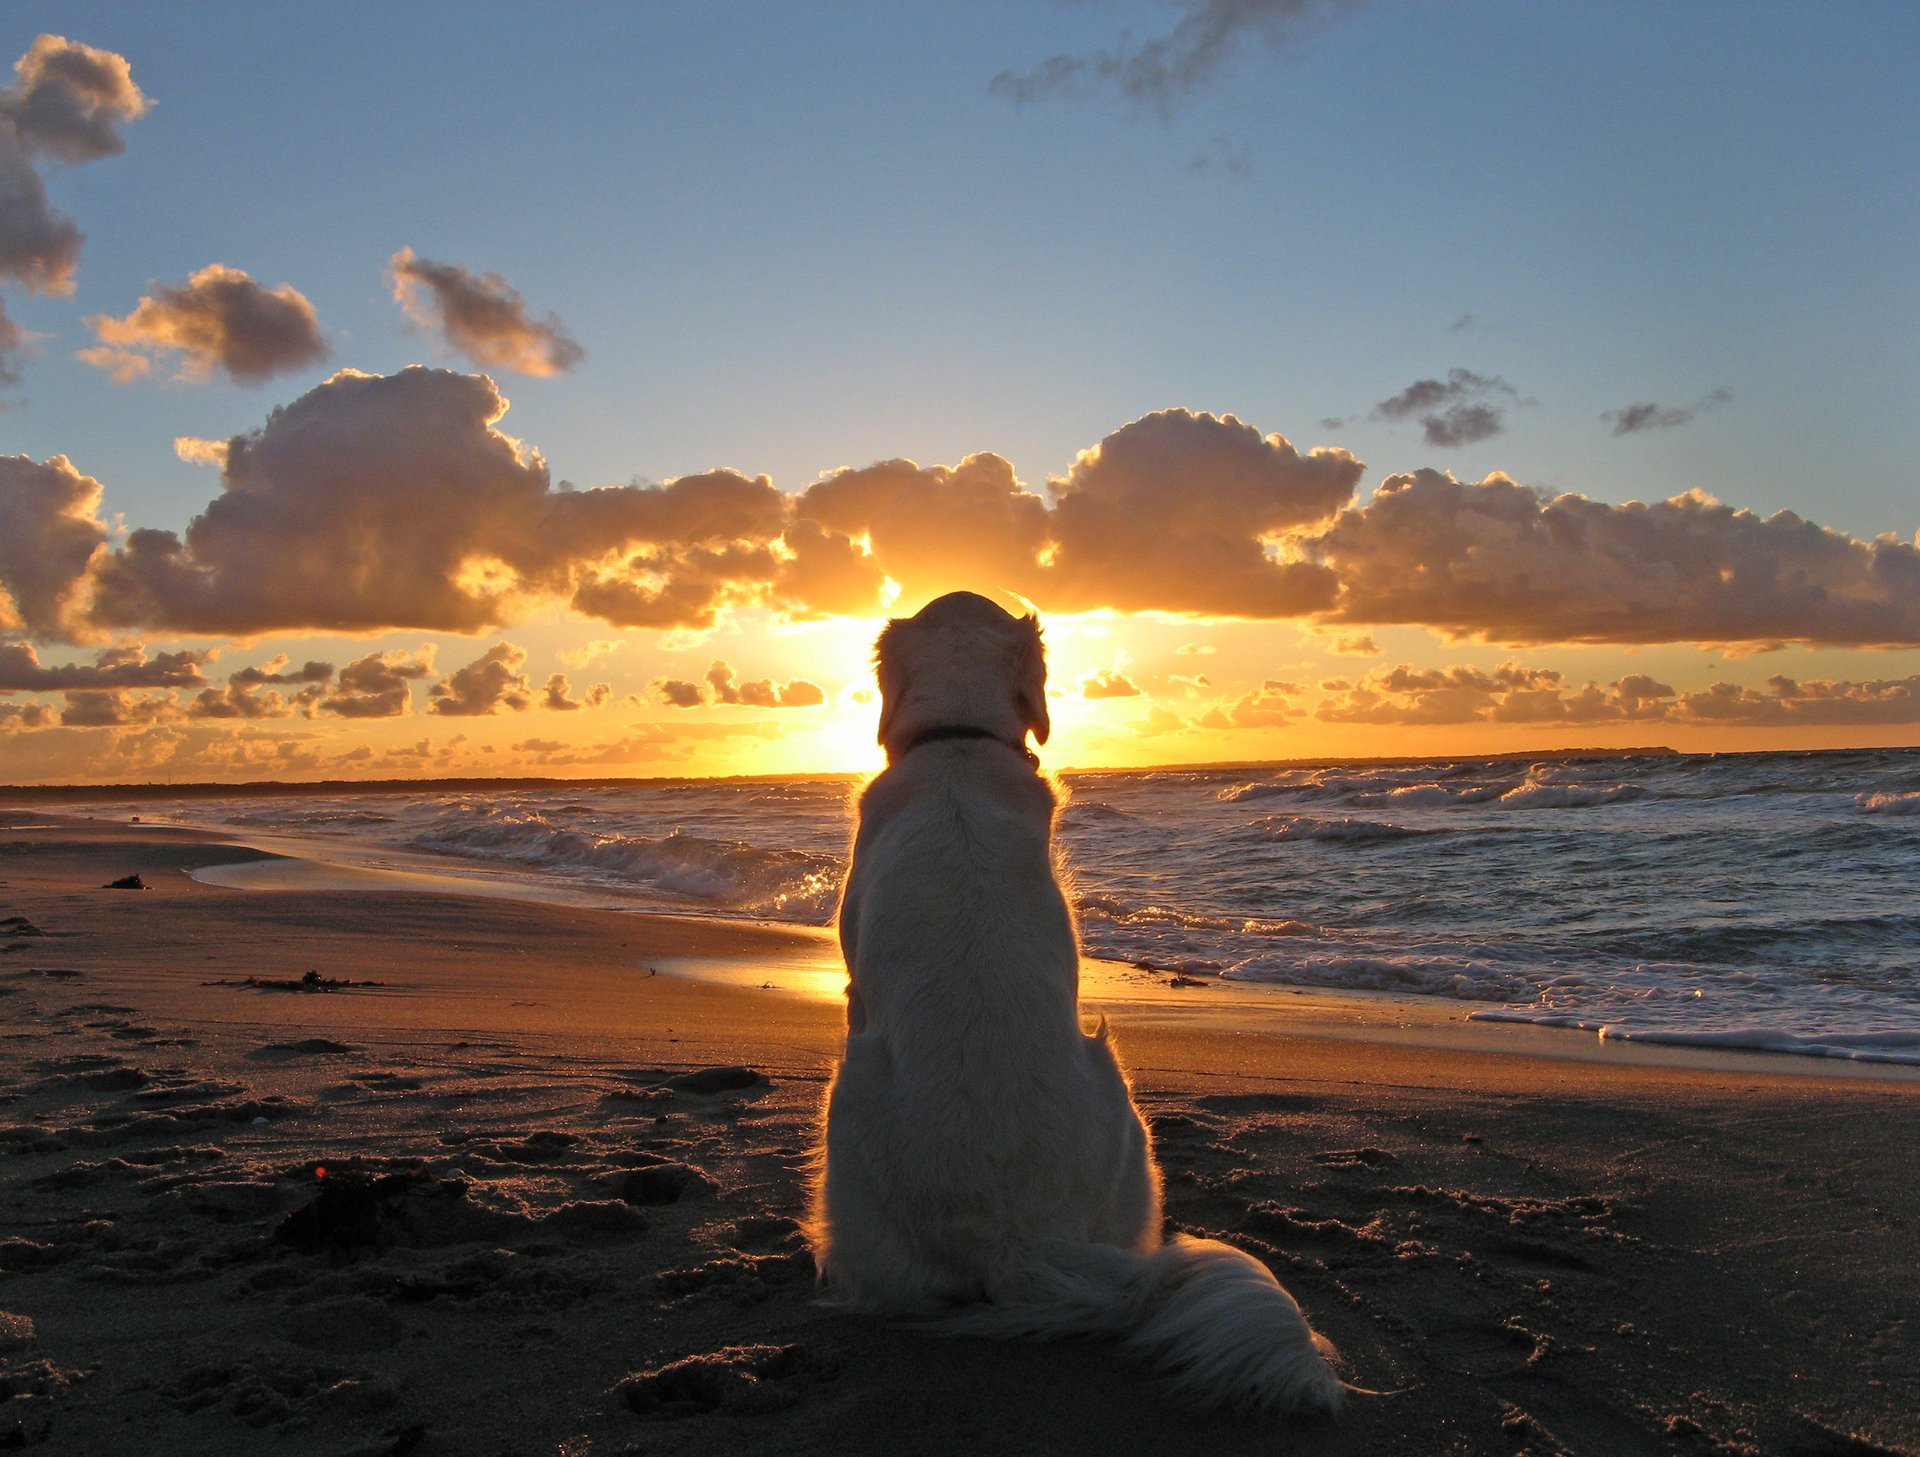 собака друг океан море солнце закат небо облака горизонт грусть верность животные собаки гав-гав-ры-рыы